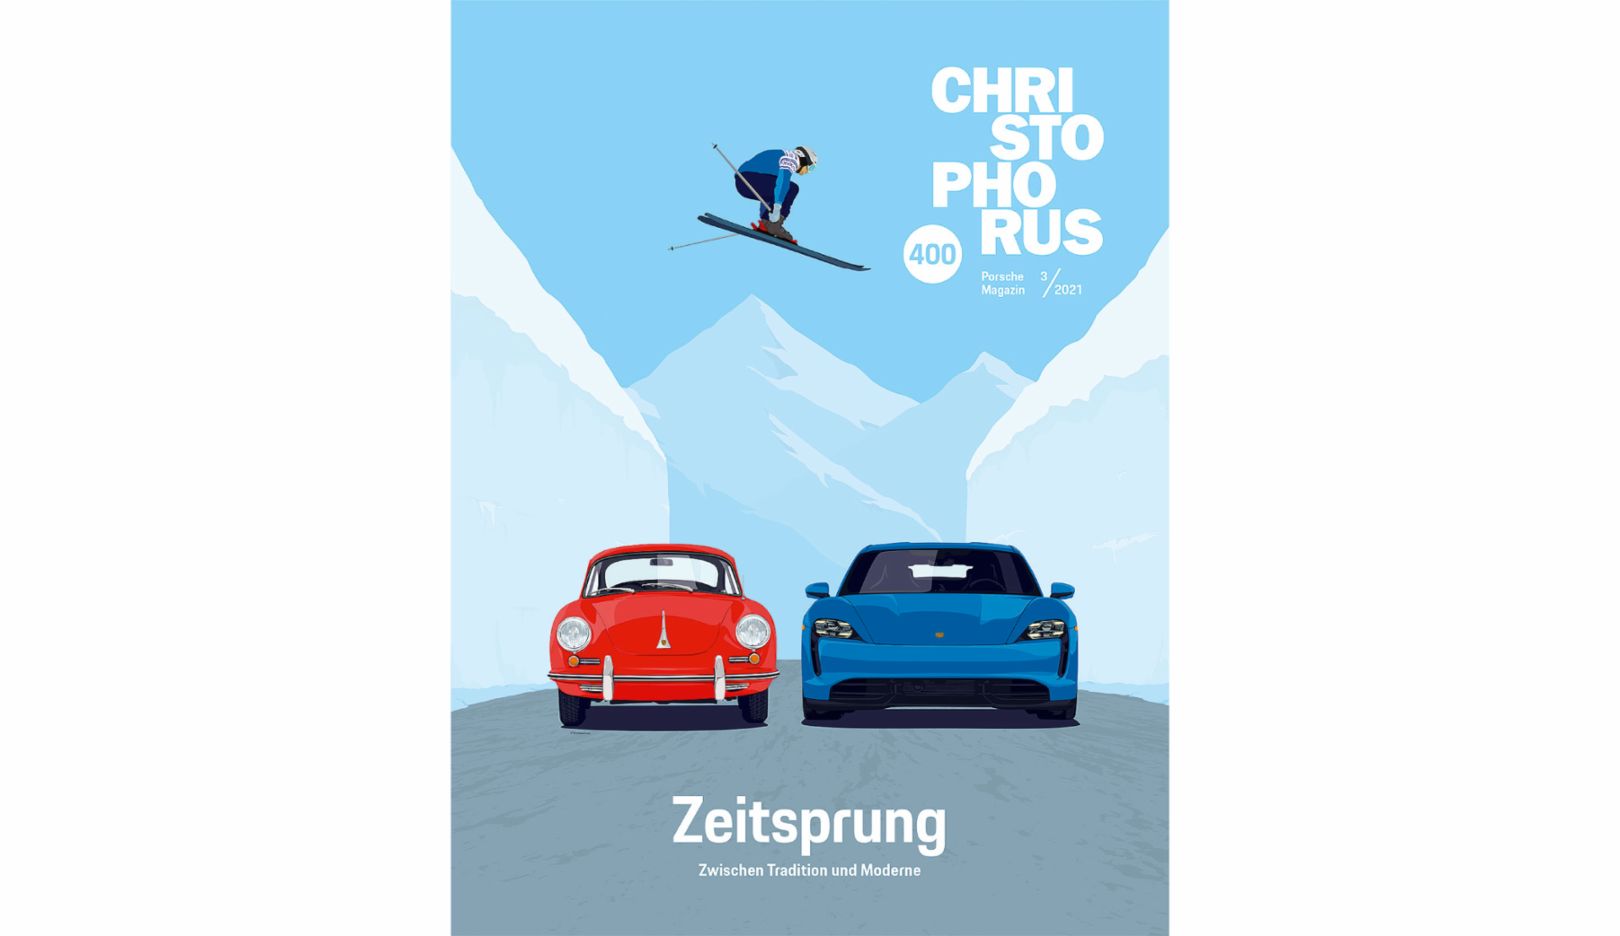 Das aktuelle Cover zeigt die Neuinterpretation des ikonischen Skisprungs über einen Porsche 356 – hier mit dem Porsche Taycan Turbo. Im Entstehungsprozess des Titelbilds für die Jubiläumsausgabe experimentierte Illustrator Jeffrey Docherty und verfolgte verschiedene Ansätze.